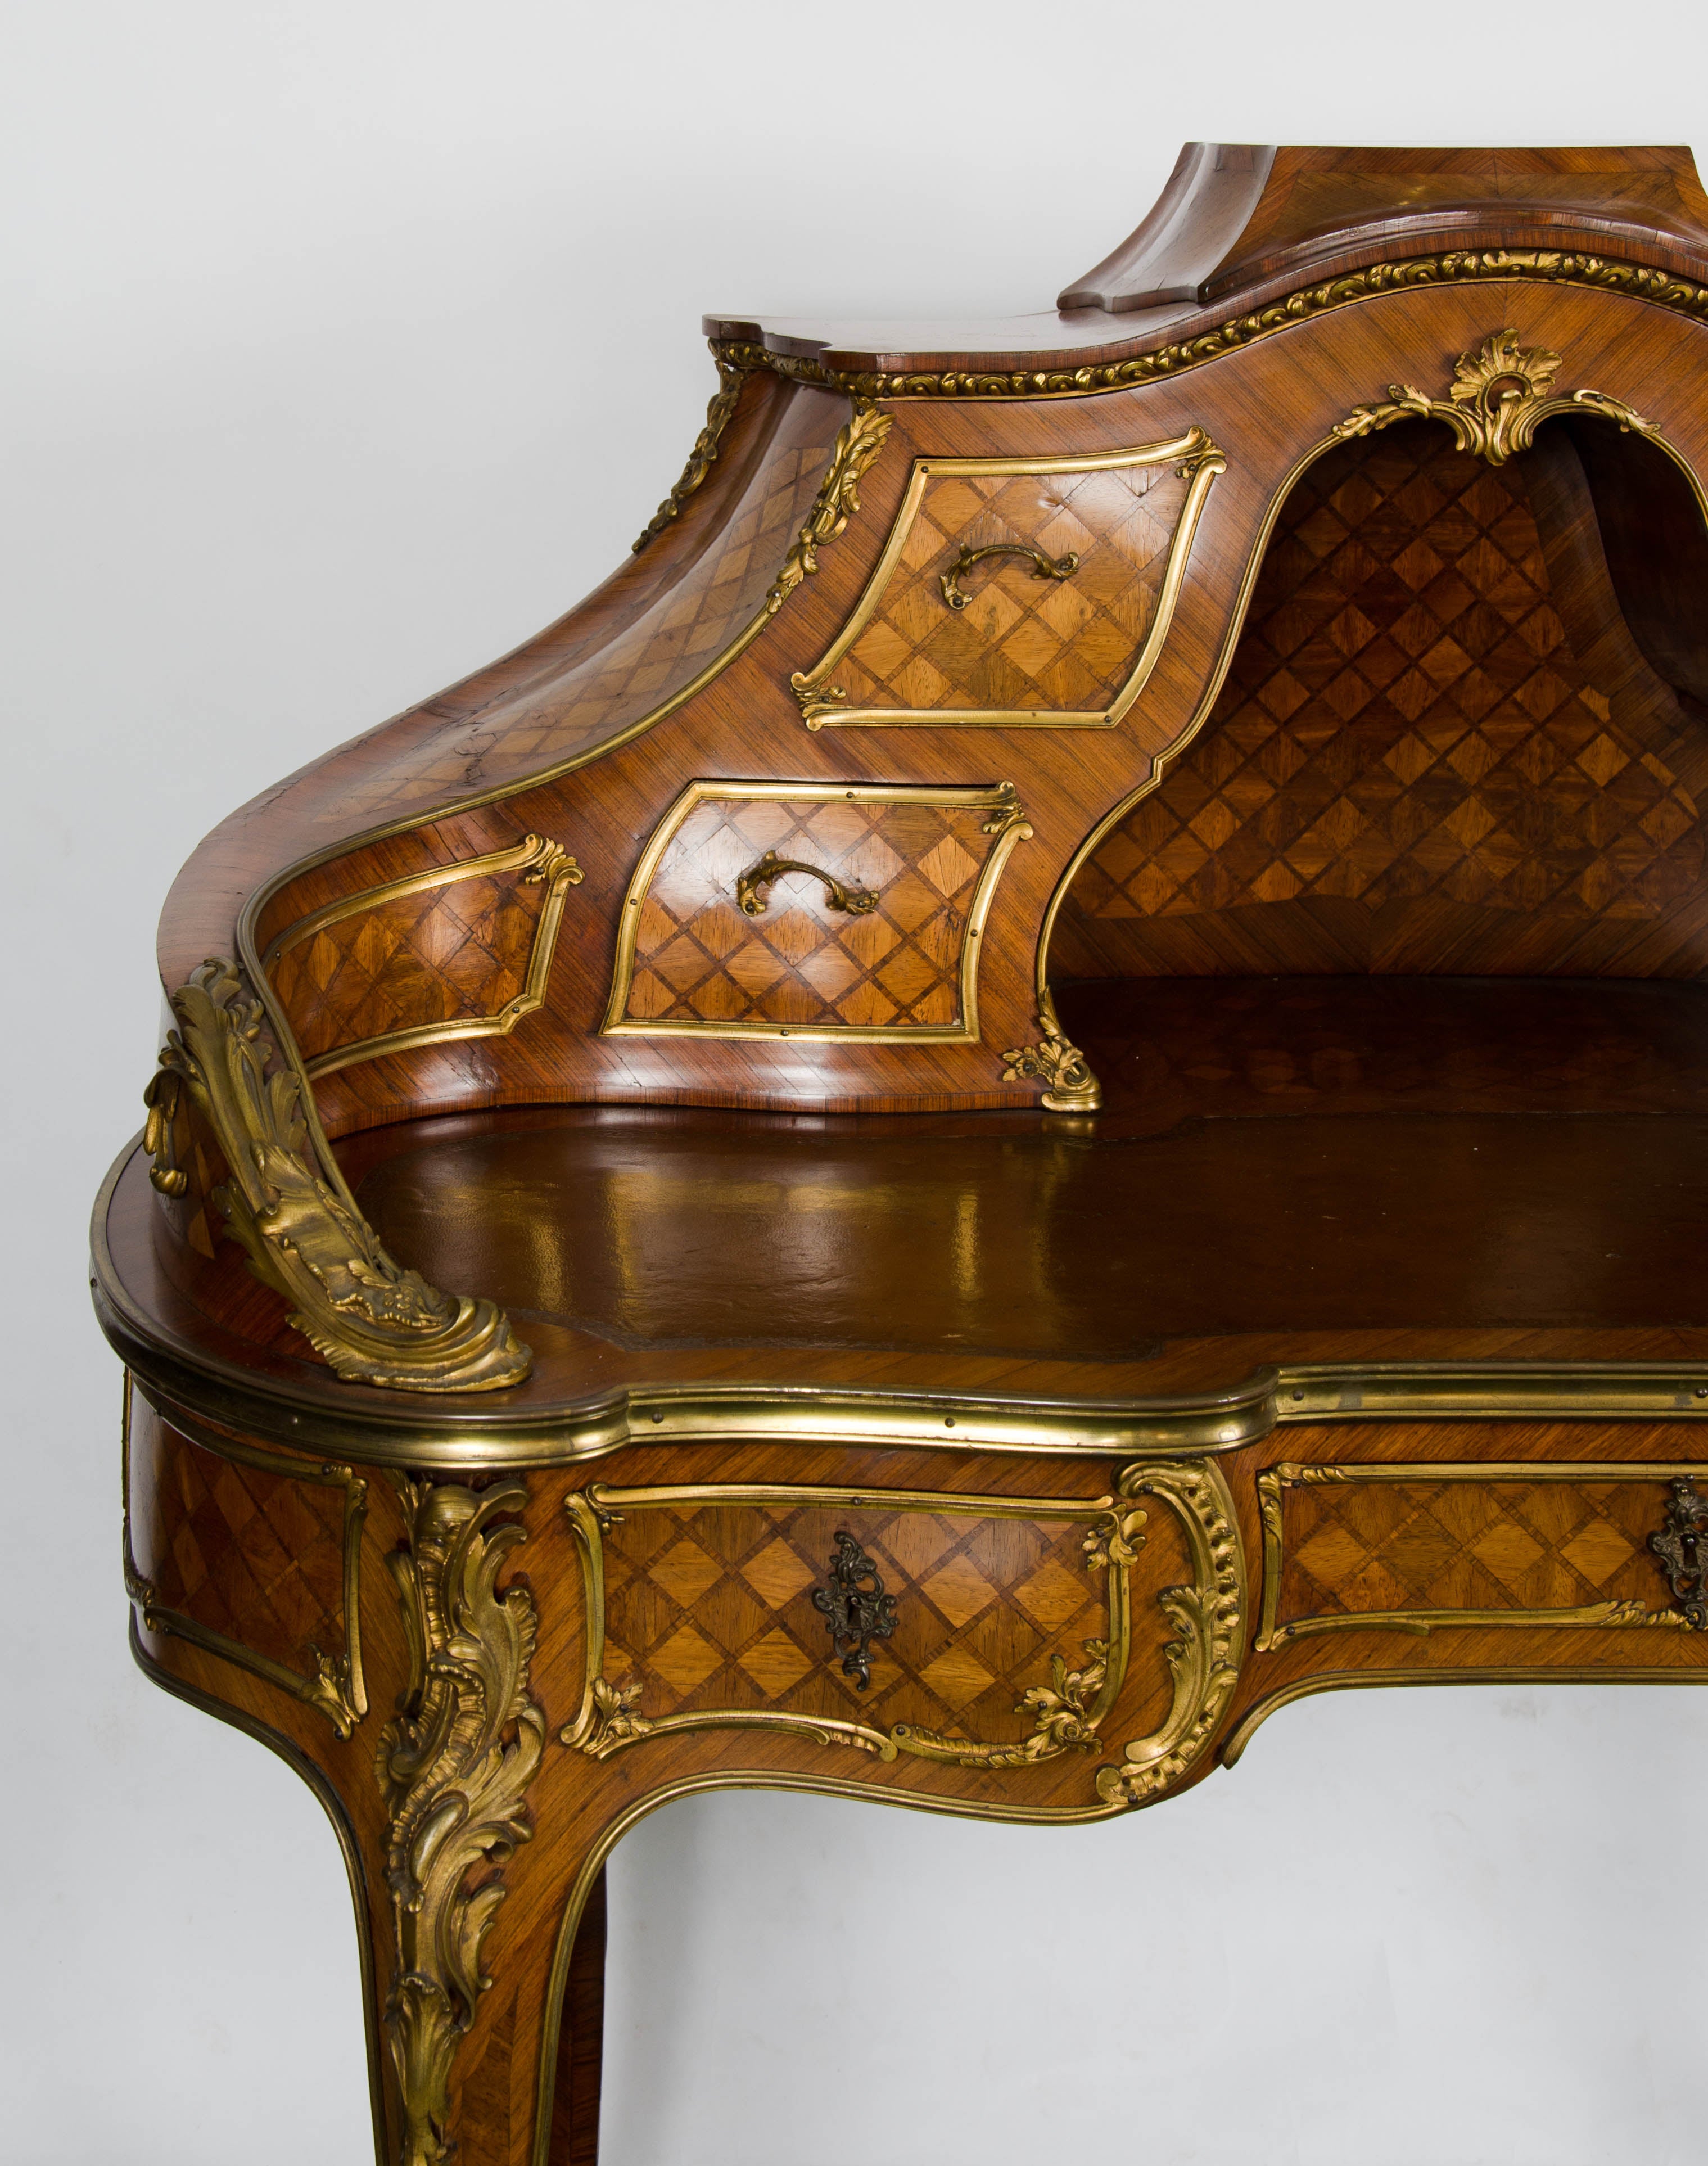 Eine sehr gute Qualität Französisch Louis XV-Stil Kingwood, ormolu montiert bureau de dame mit Parkett eingelegt, um die ganze, verschiedene Schubladen auf der Oberseite und Fries, inset Leder oben und hob auf Cabriole Beine.